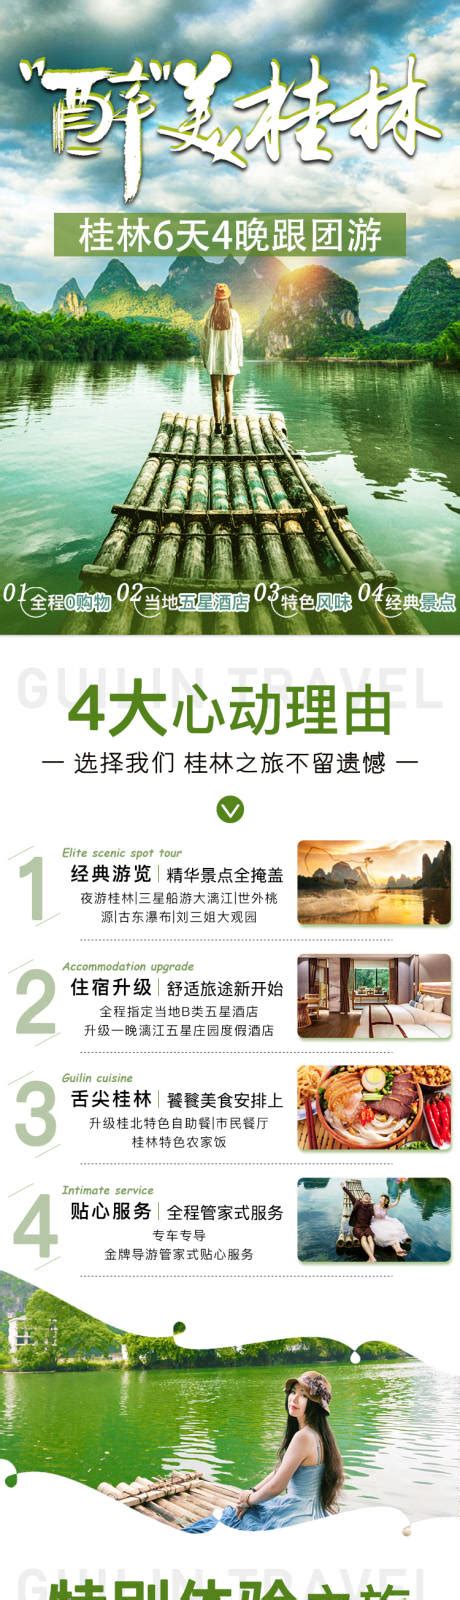 桂林网页设计公司